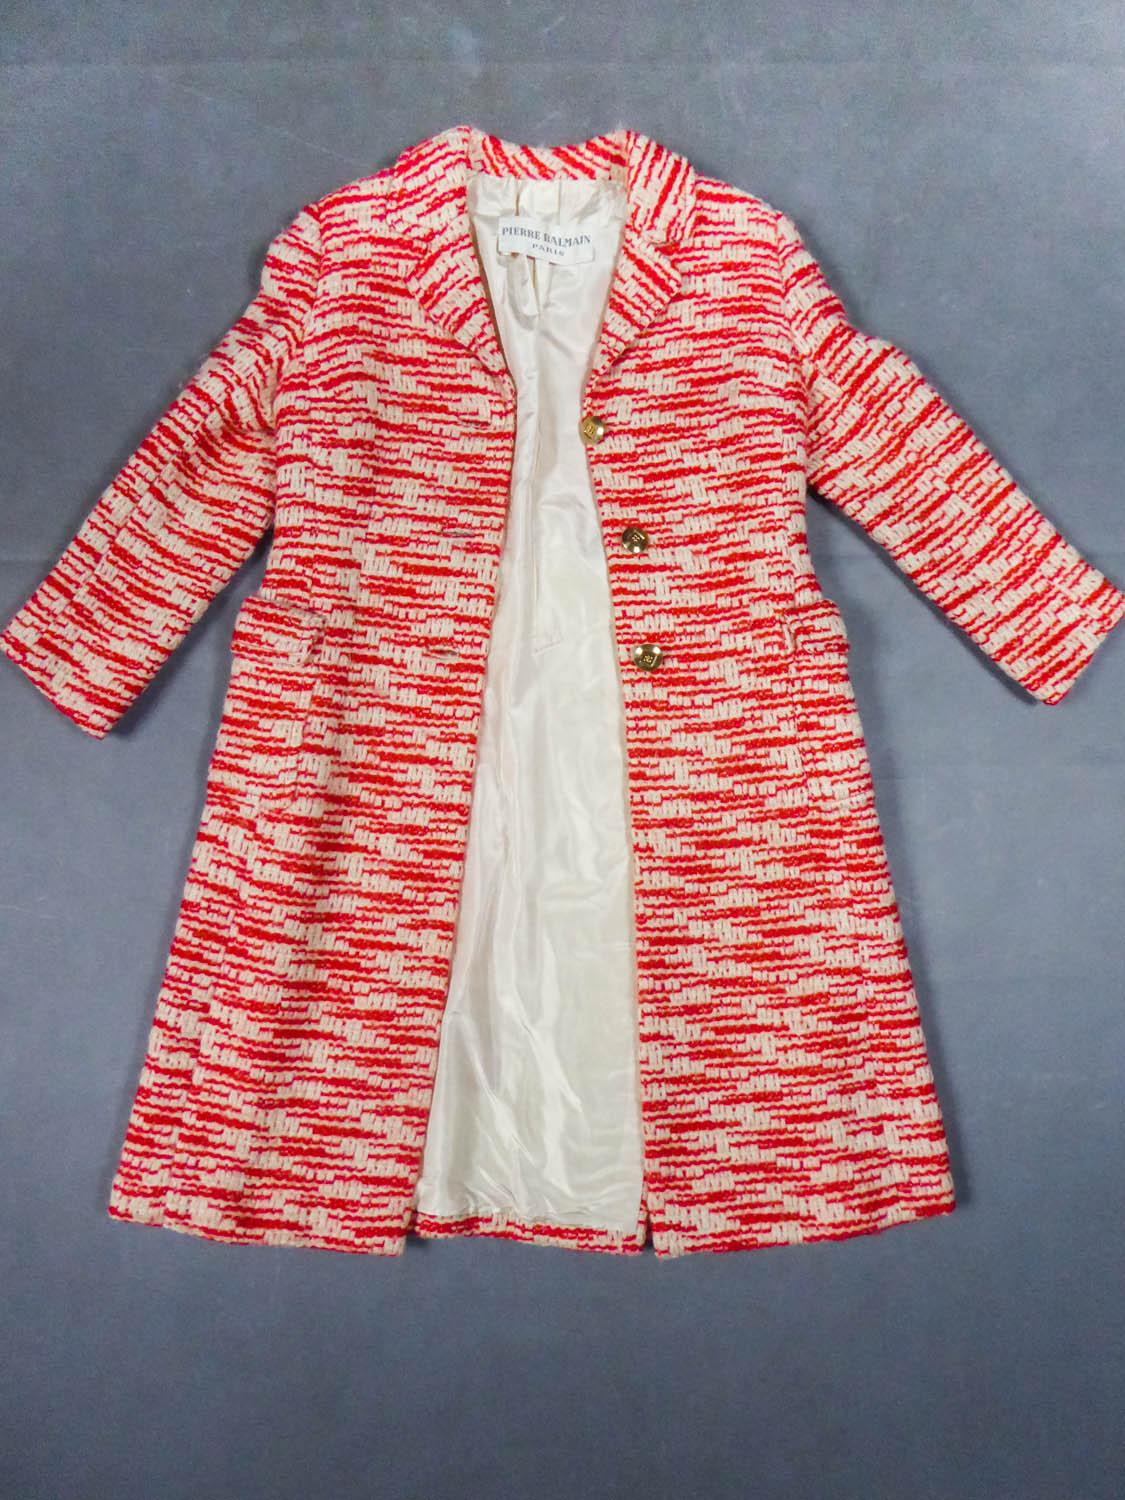 Um 1970
Frankreich

Mantel aus zweifarbiger, rot-weißer Strickwolle mit geometrischen, sich nicht wiederholenden Mustern aus dem berühmten Couture-Designerhaus Pierre Balmain. Große Nähte und taillierter Schnitt mit breitem, leicht ausgestelltem